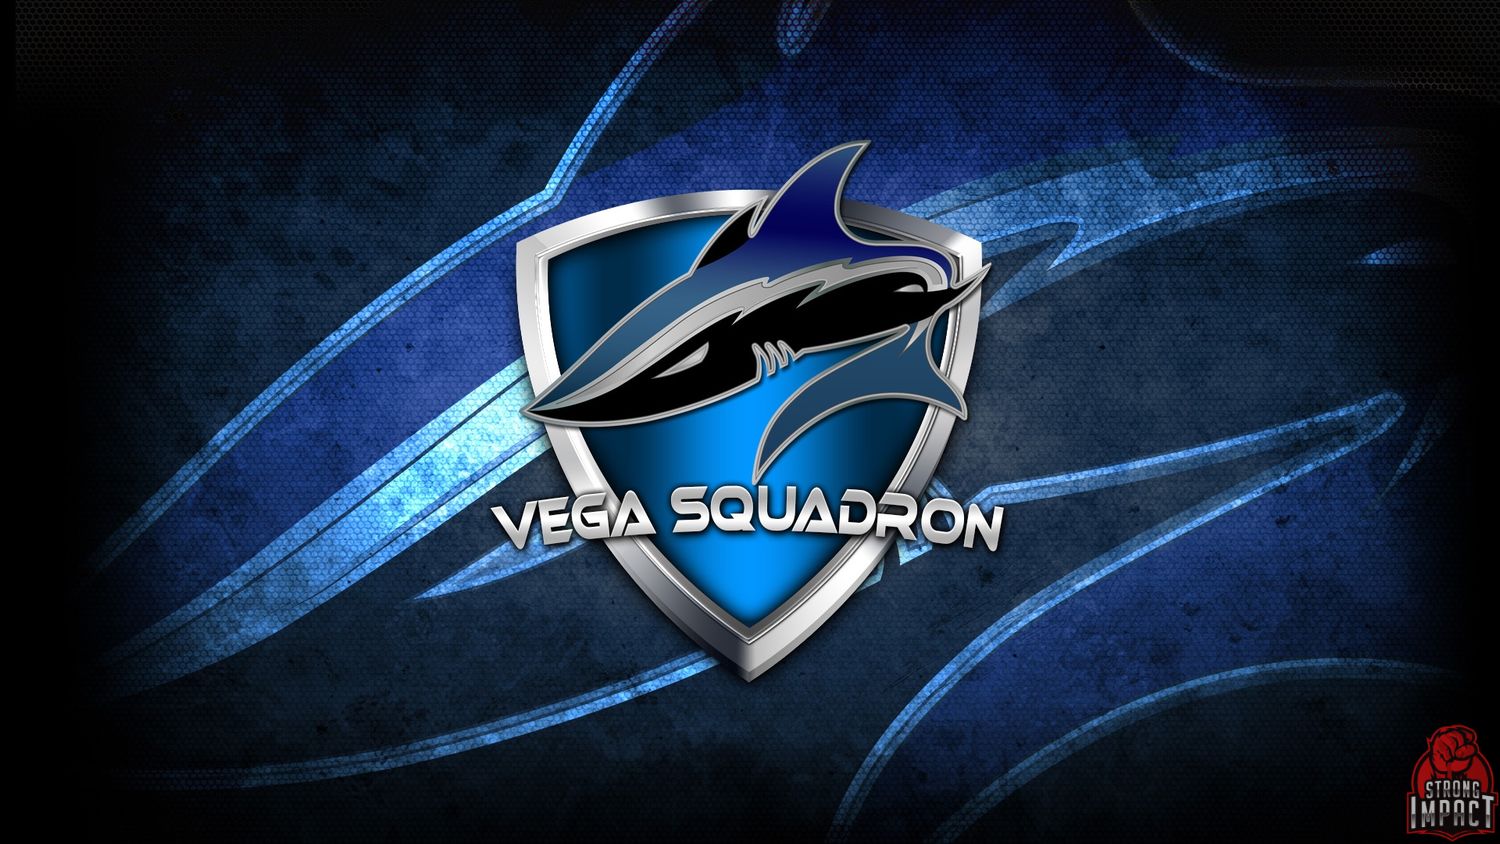 Seized войдет в новый состав Vega Squadron